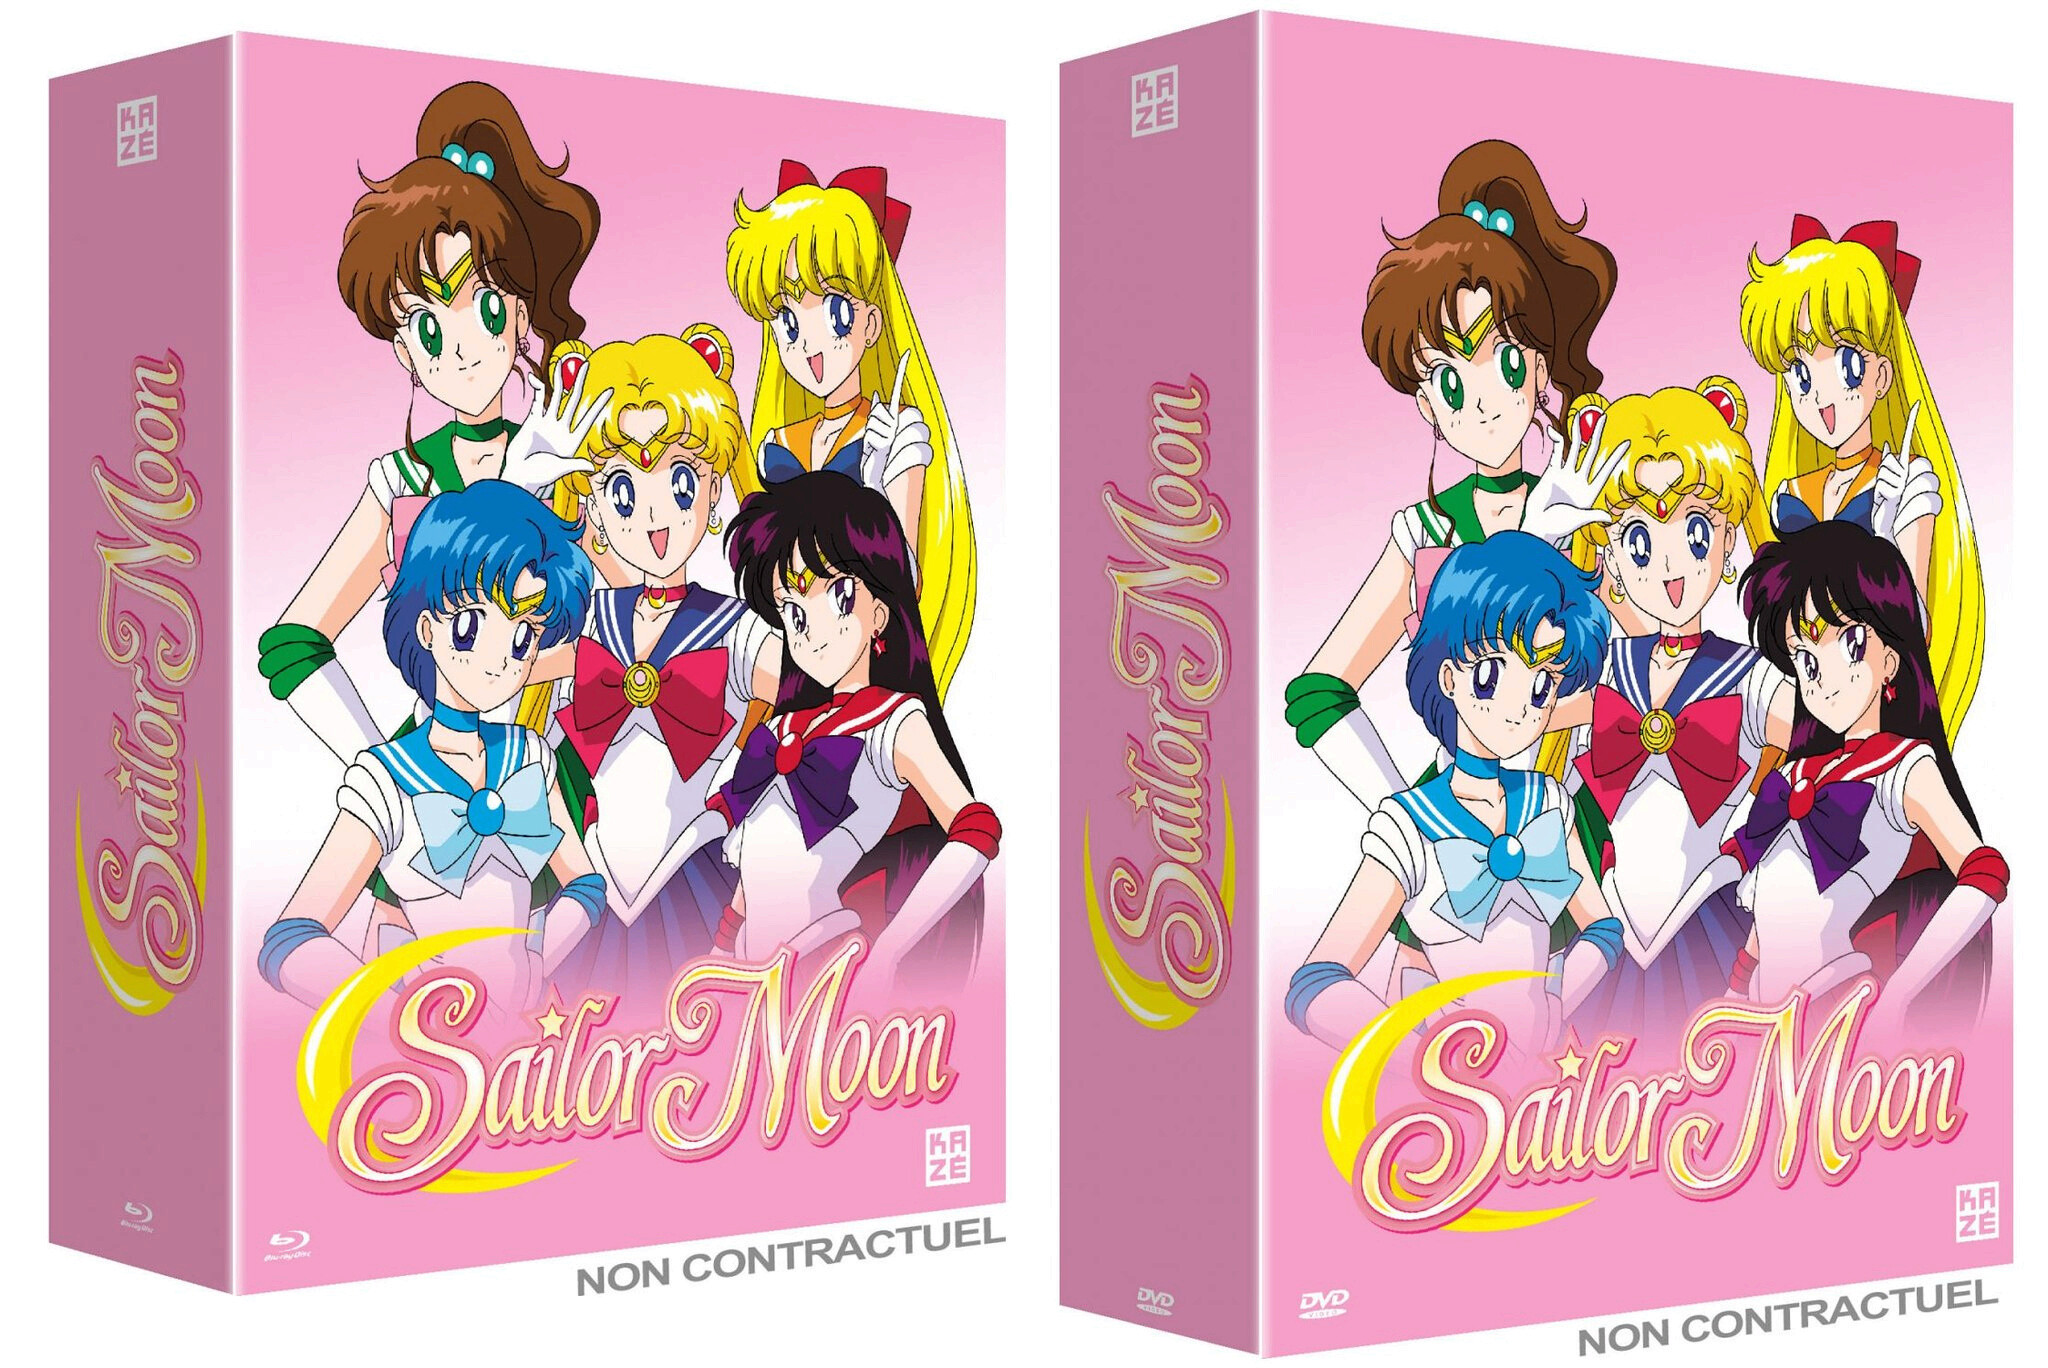 Sailor Moon réédité Blu-ray chez Kazé Image10